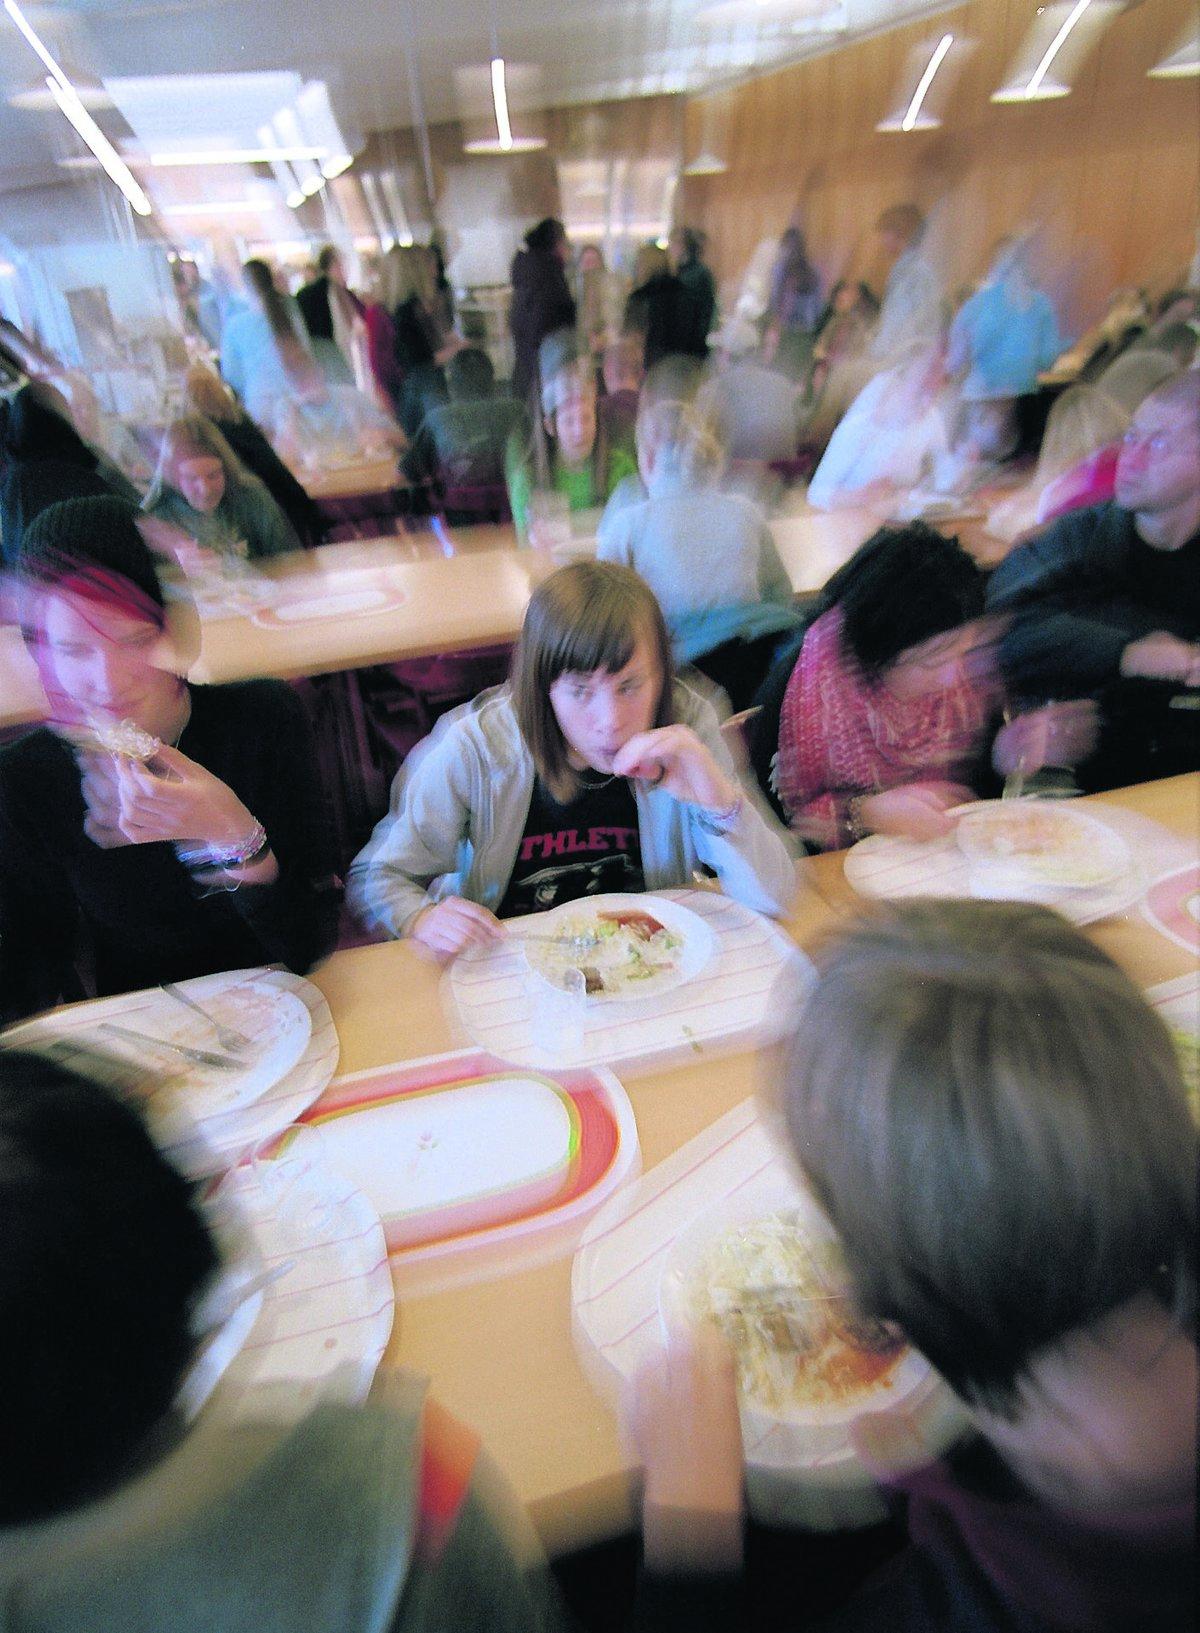 möte med barn I Södertälje tror politikerna att pensionärerna skulle må bra av att äta tillsammans med skolbarnen. ”Det kan vara ett bra sätt för ensamma pensionärer att få träffa andra”, säger äldreomsorgsnämndens ordförande Kerstin Pettersson.